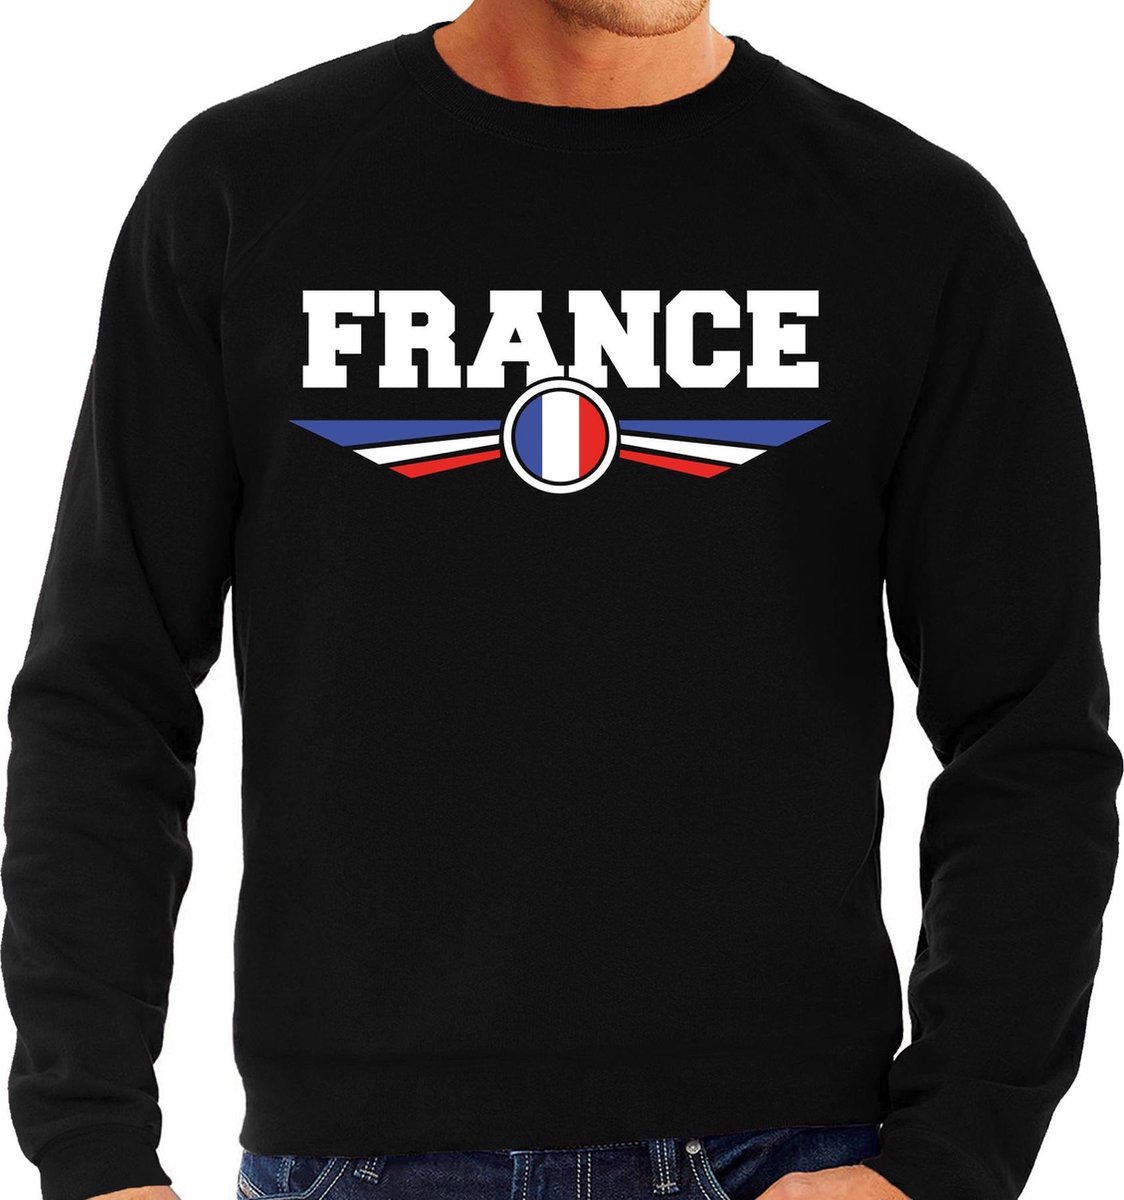 Frankrijk / France landen sweater / trui zwart heren M